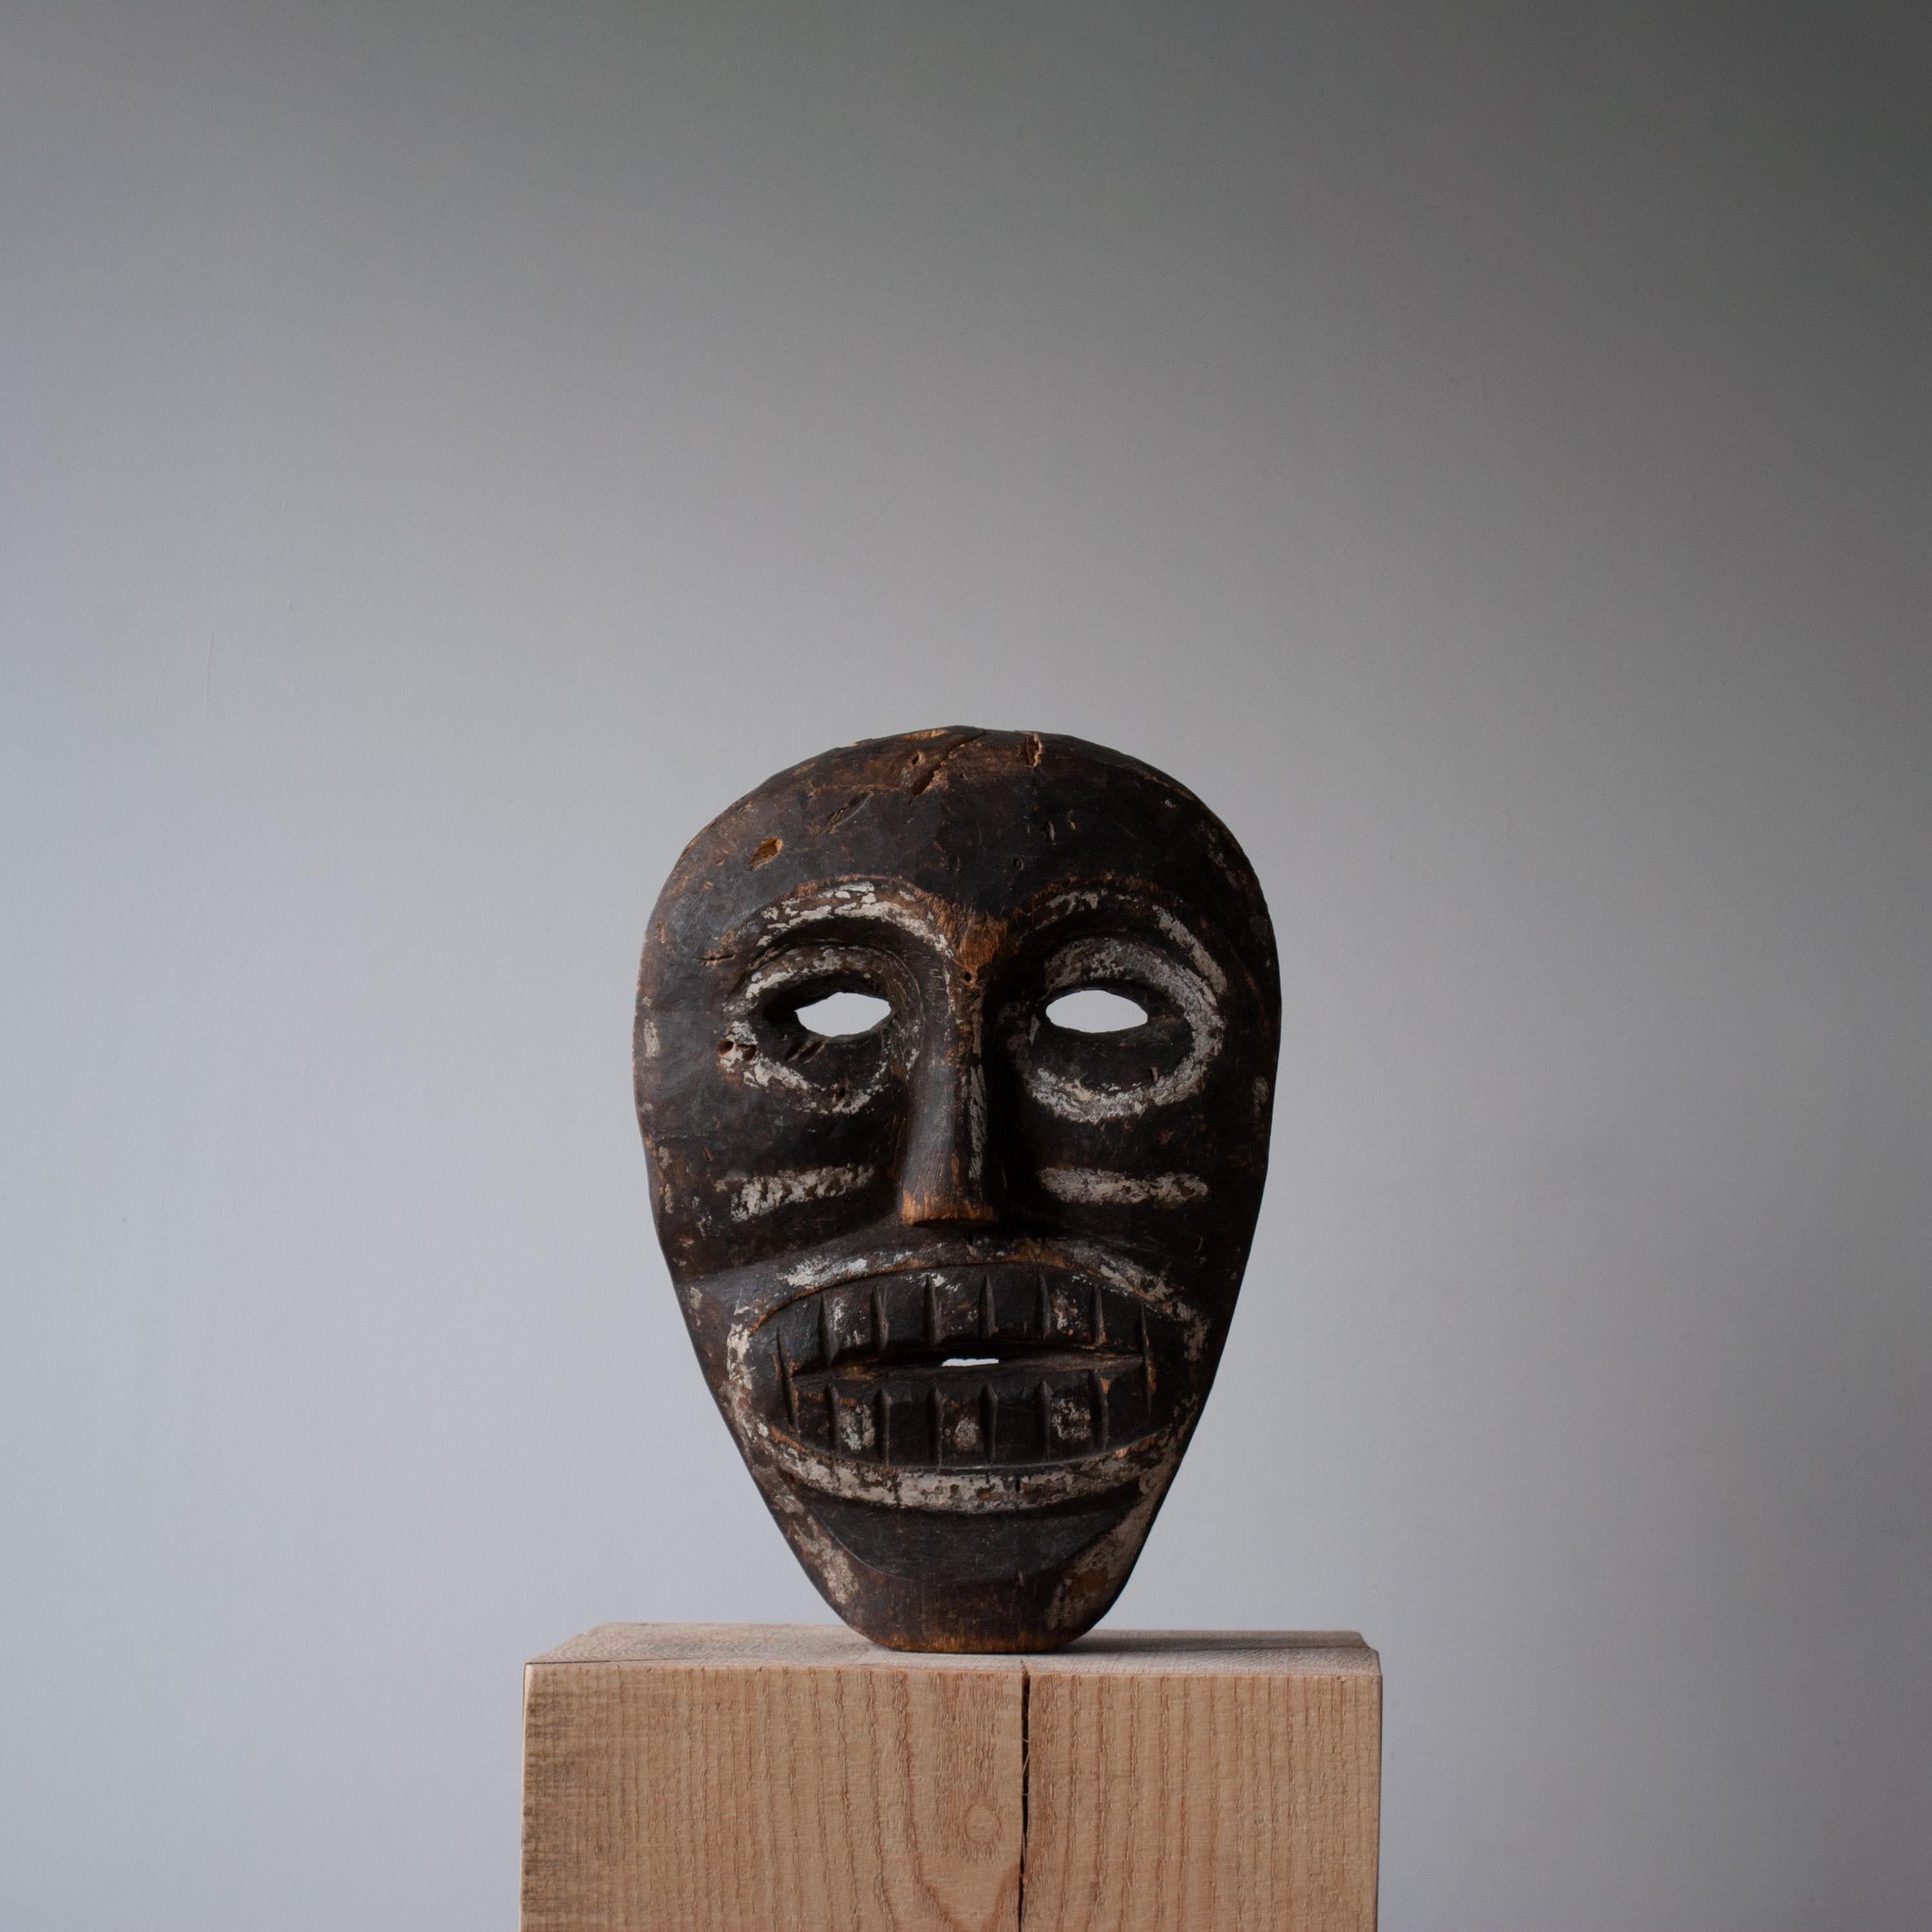 Eine seltene rituelle Maske eines Iban-Dayak-Schamanen, Anfang bis Mitte des 20. Jahrhunderts, Kalimantan/Borneo, Indonesien. Handgeschnitzt aus lokalem Jelutong-Holz mit vorhandenem Zierkalk und Holzkohle/Pigmenten.